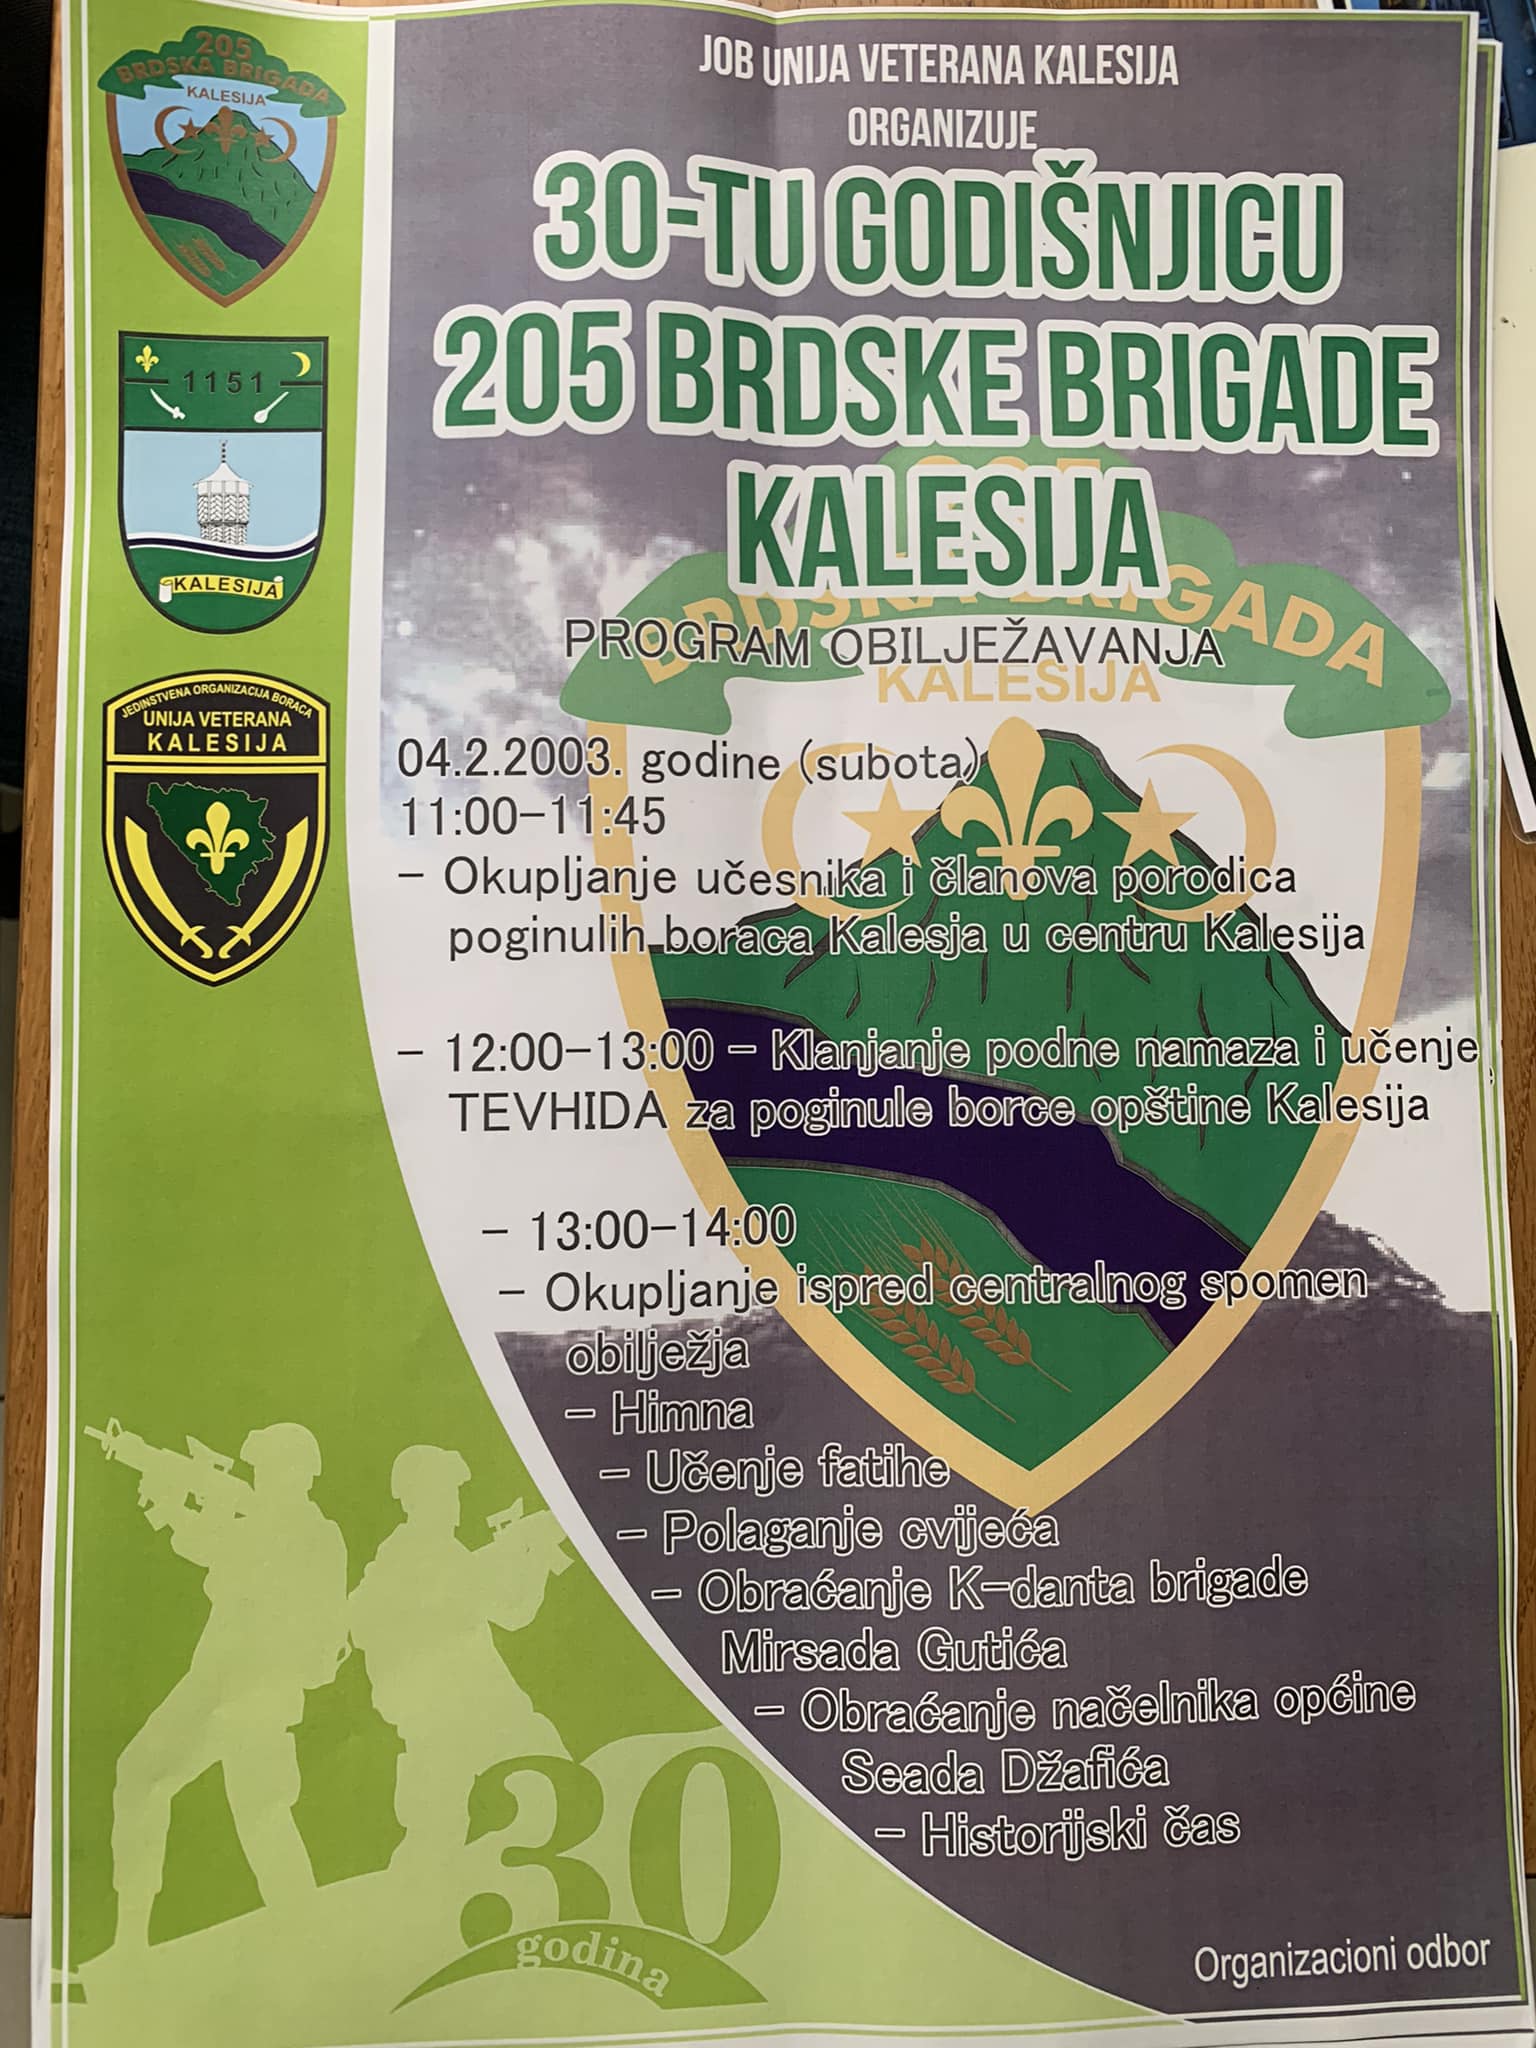 u subotu obilježavanje 30. godišnjice 205. brdske brigade kalesija